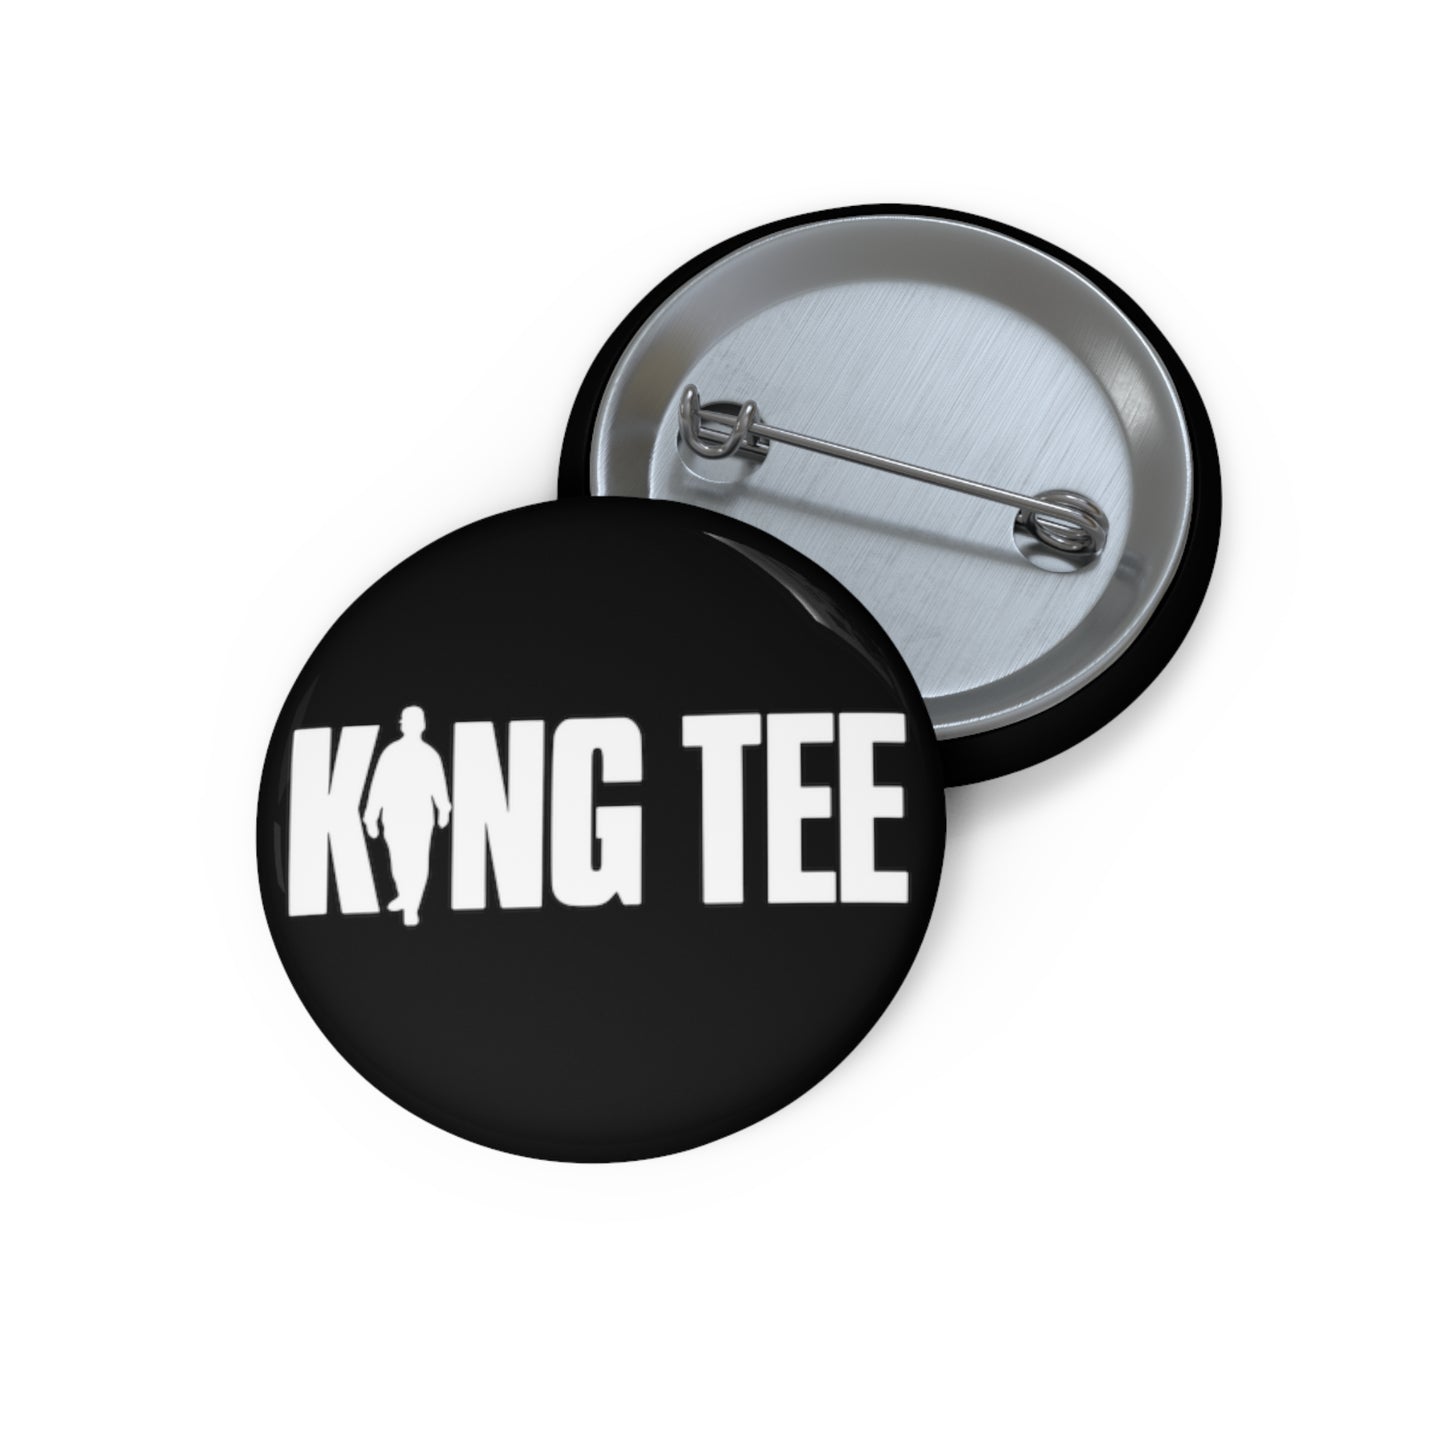 King Tee Pin Button